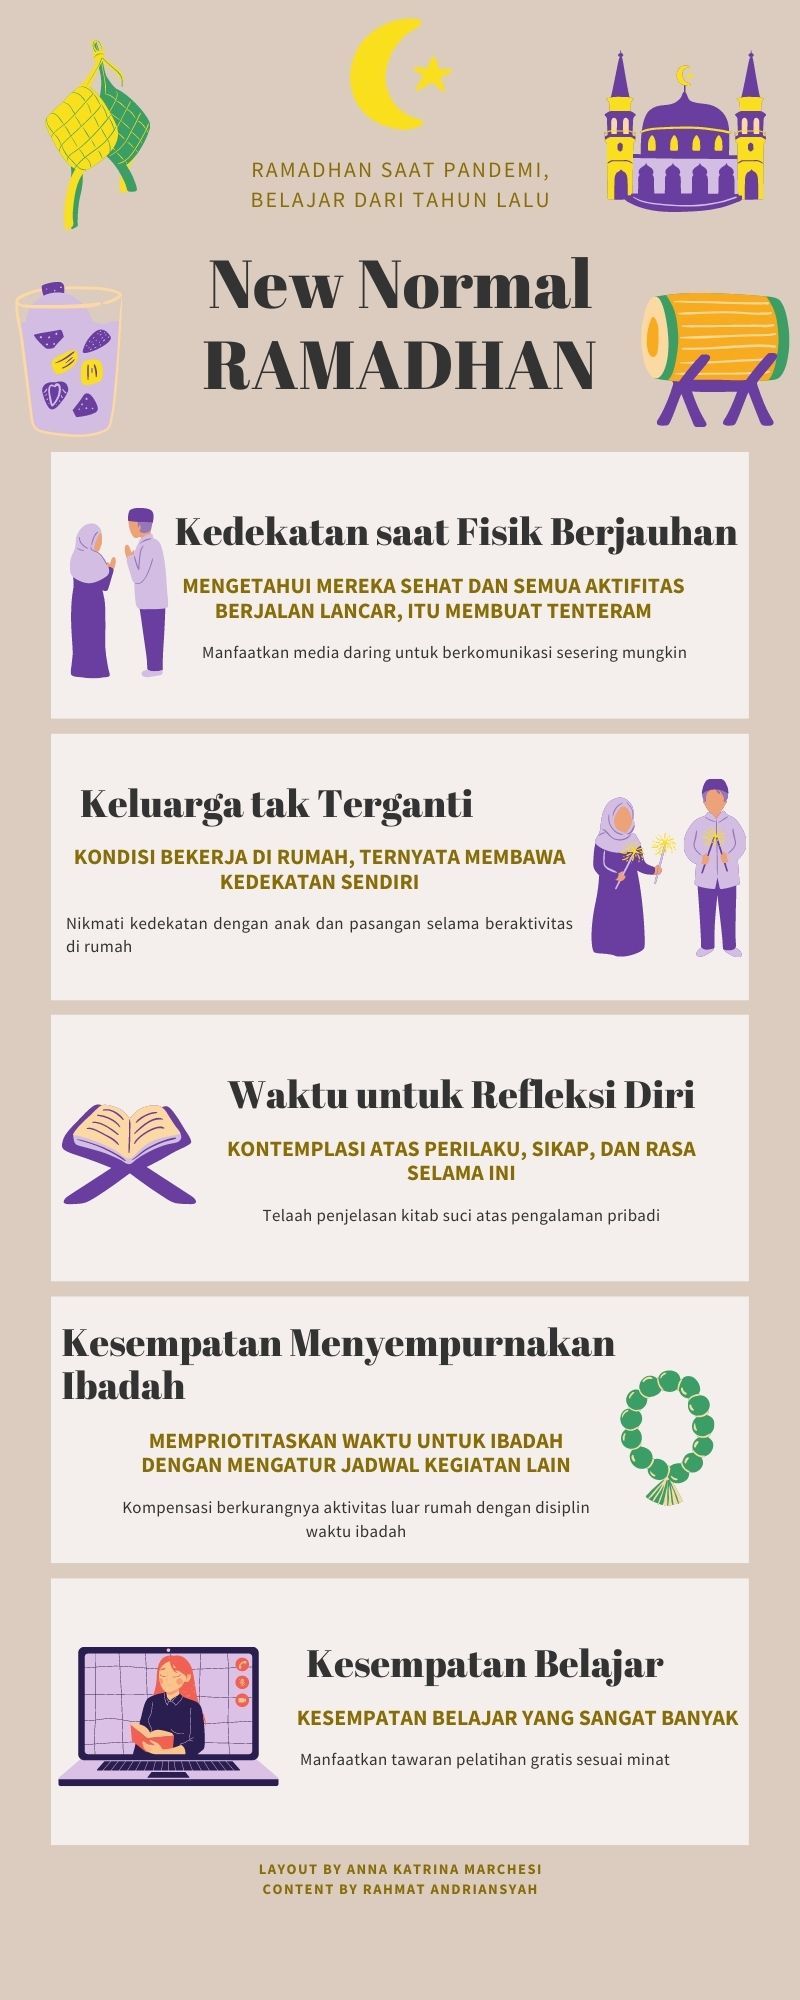 Lima Cara Memanfaatkan Kesempatan "New Normal Ramadhan"